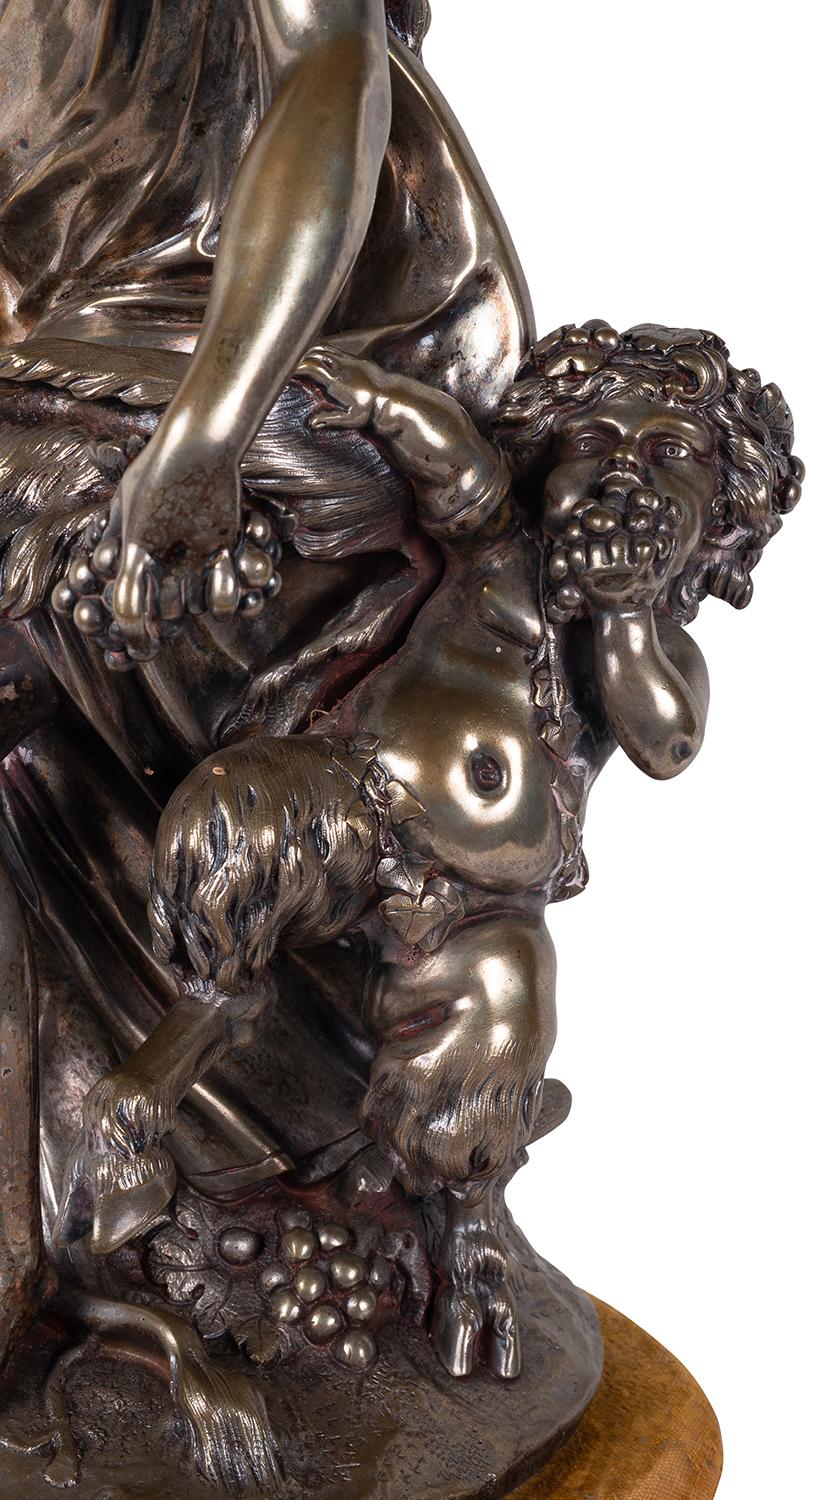 Groupe en bronze argenté patiné de très bonne qualité, datant du 19e siècle, influencé par Bacchus.
Signé ; Clodion.